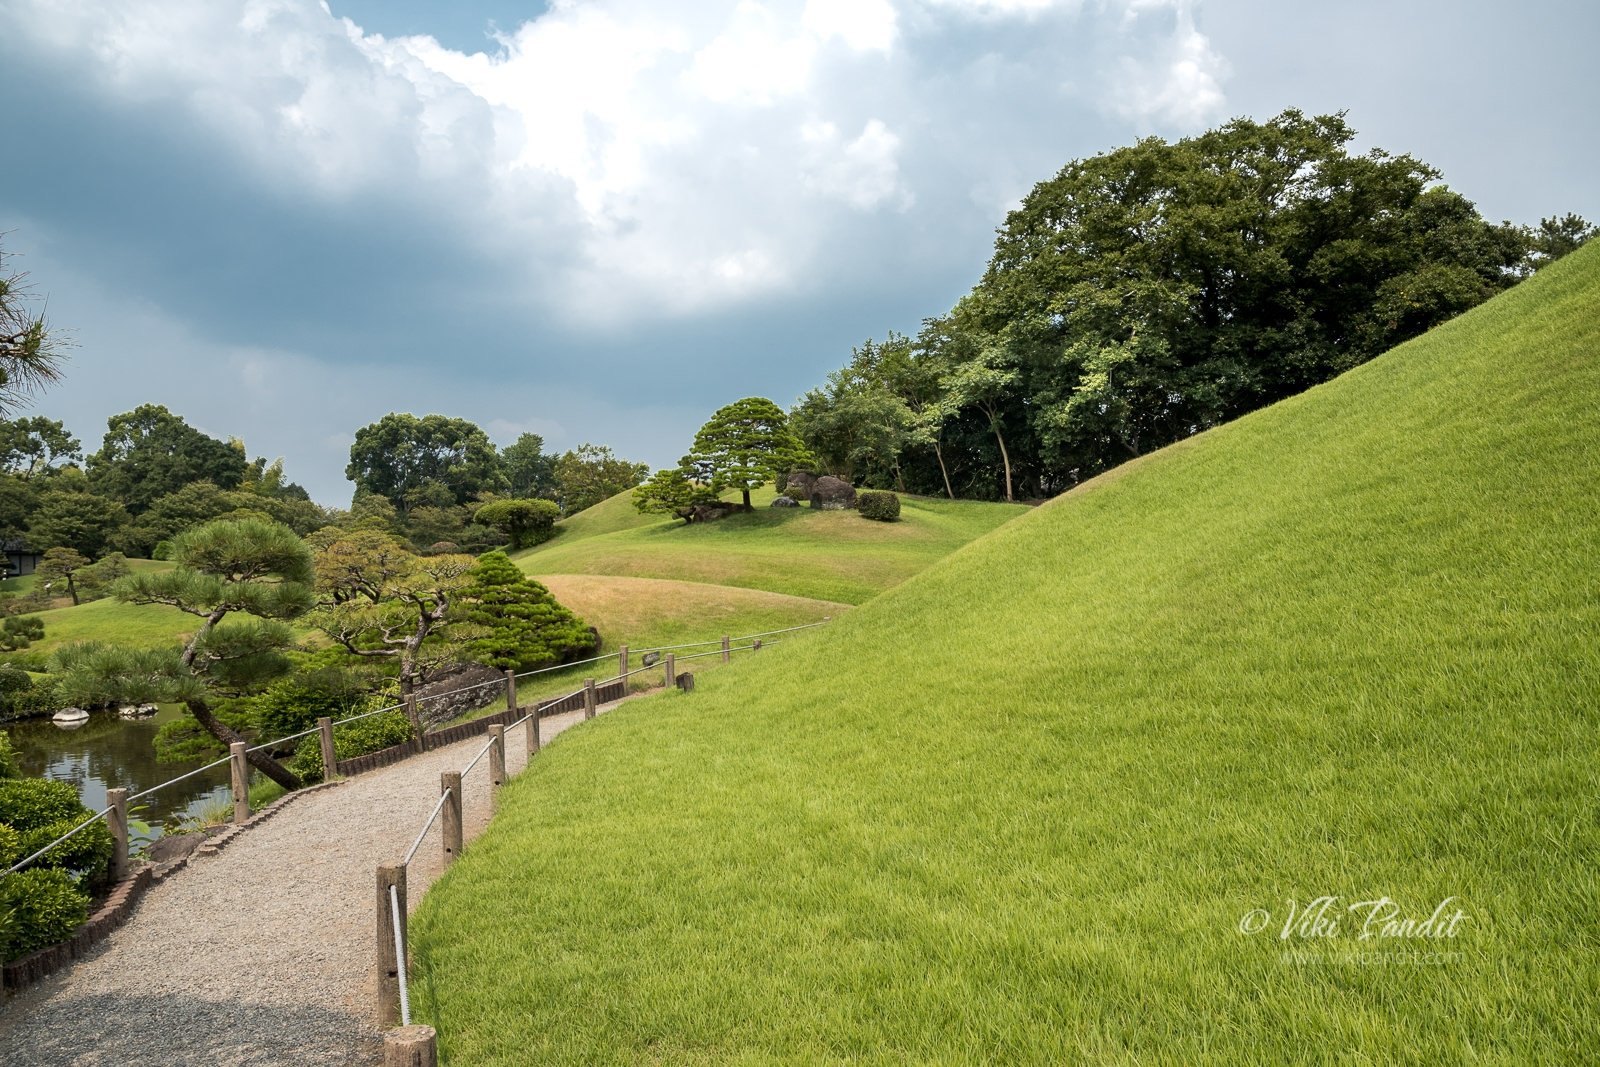 Suizenji Garden, Kumamoto